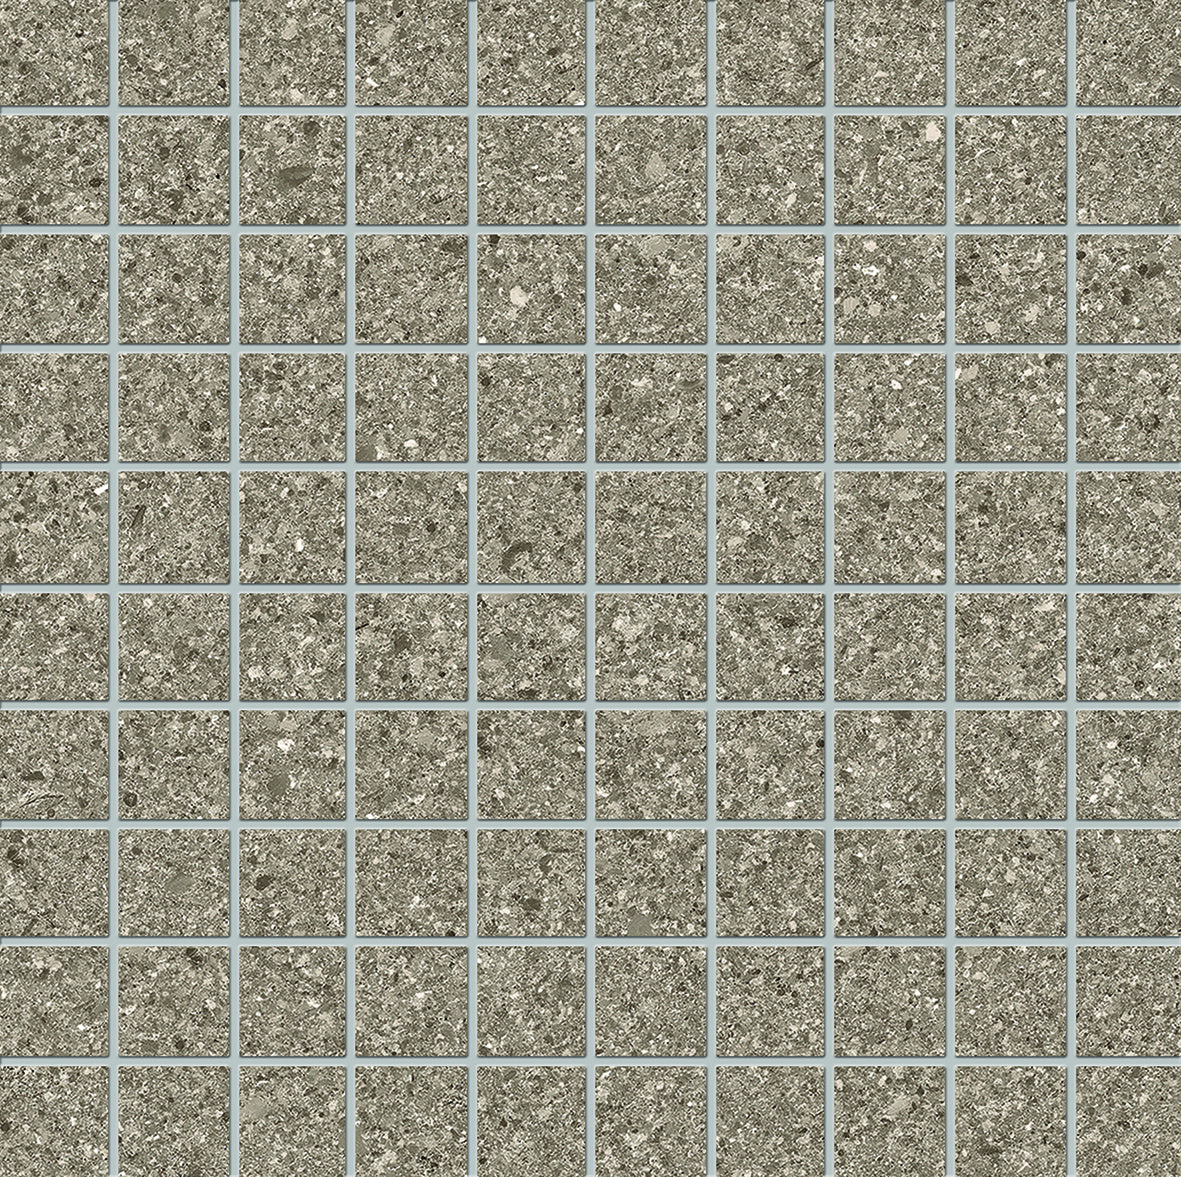 Cement Stone 1x1 Porcelain Mosaic